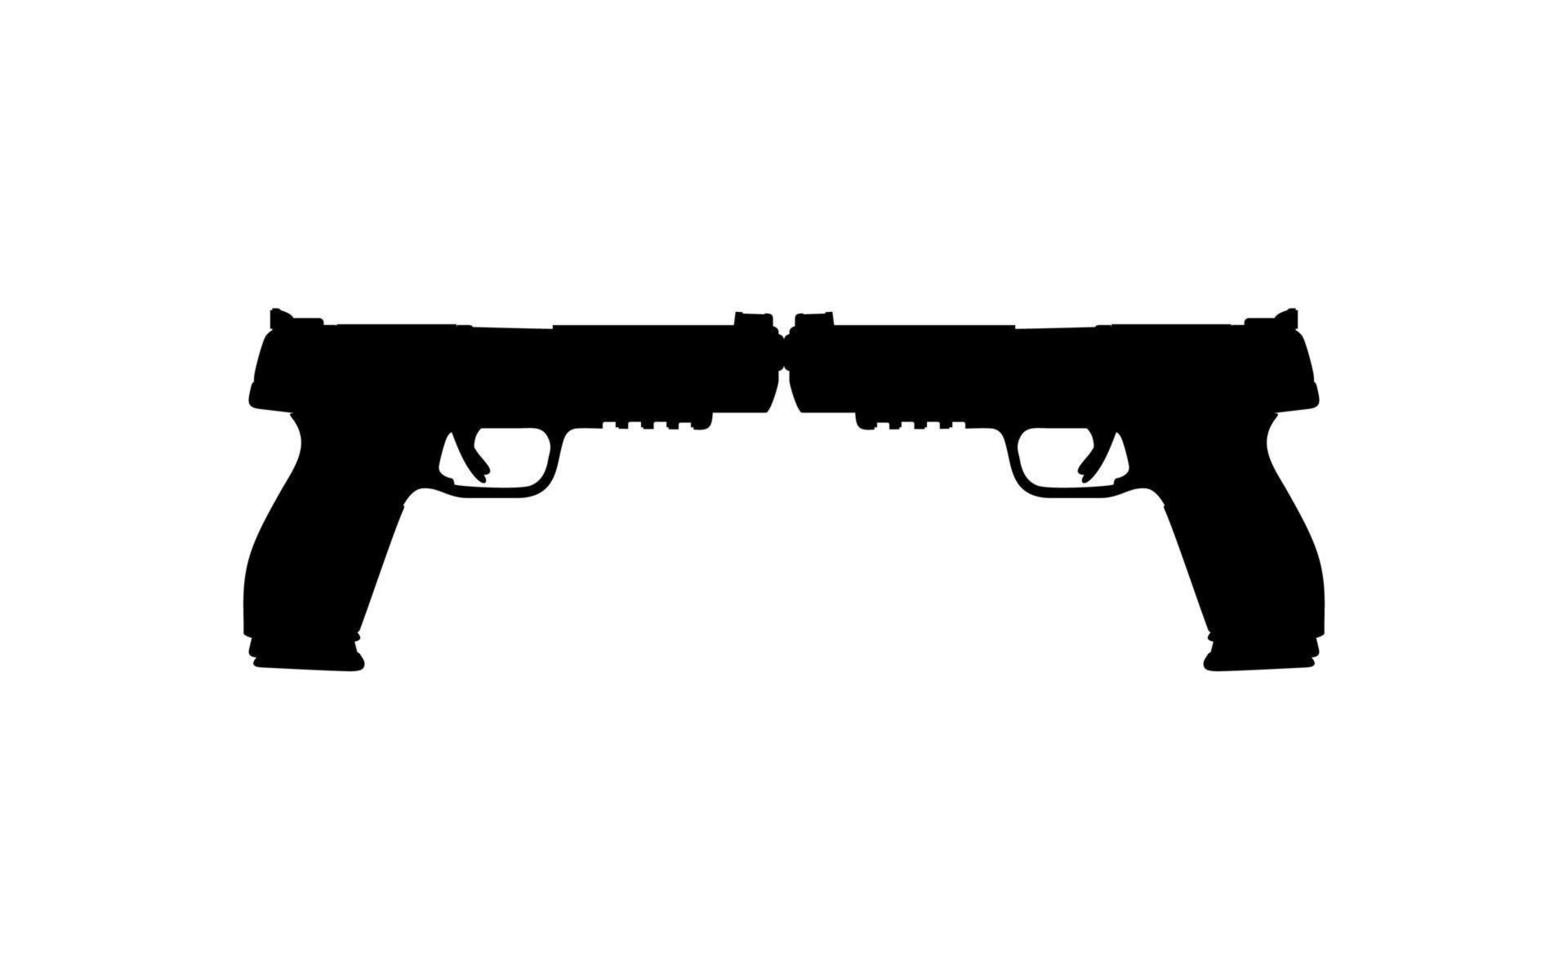 silhouette de pistolet pour logo, pictogramme, illustration d'art, site Web ou élément de conception graphique. illustration vectorielle vecteur